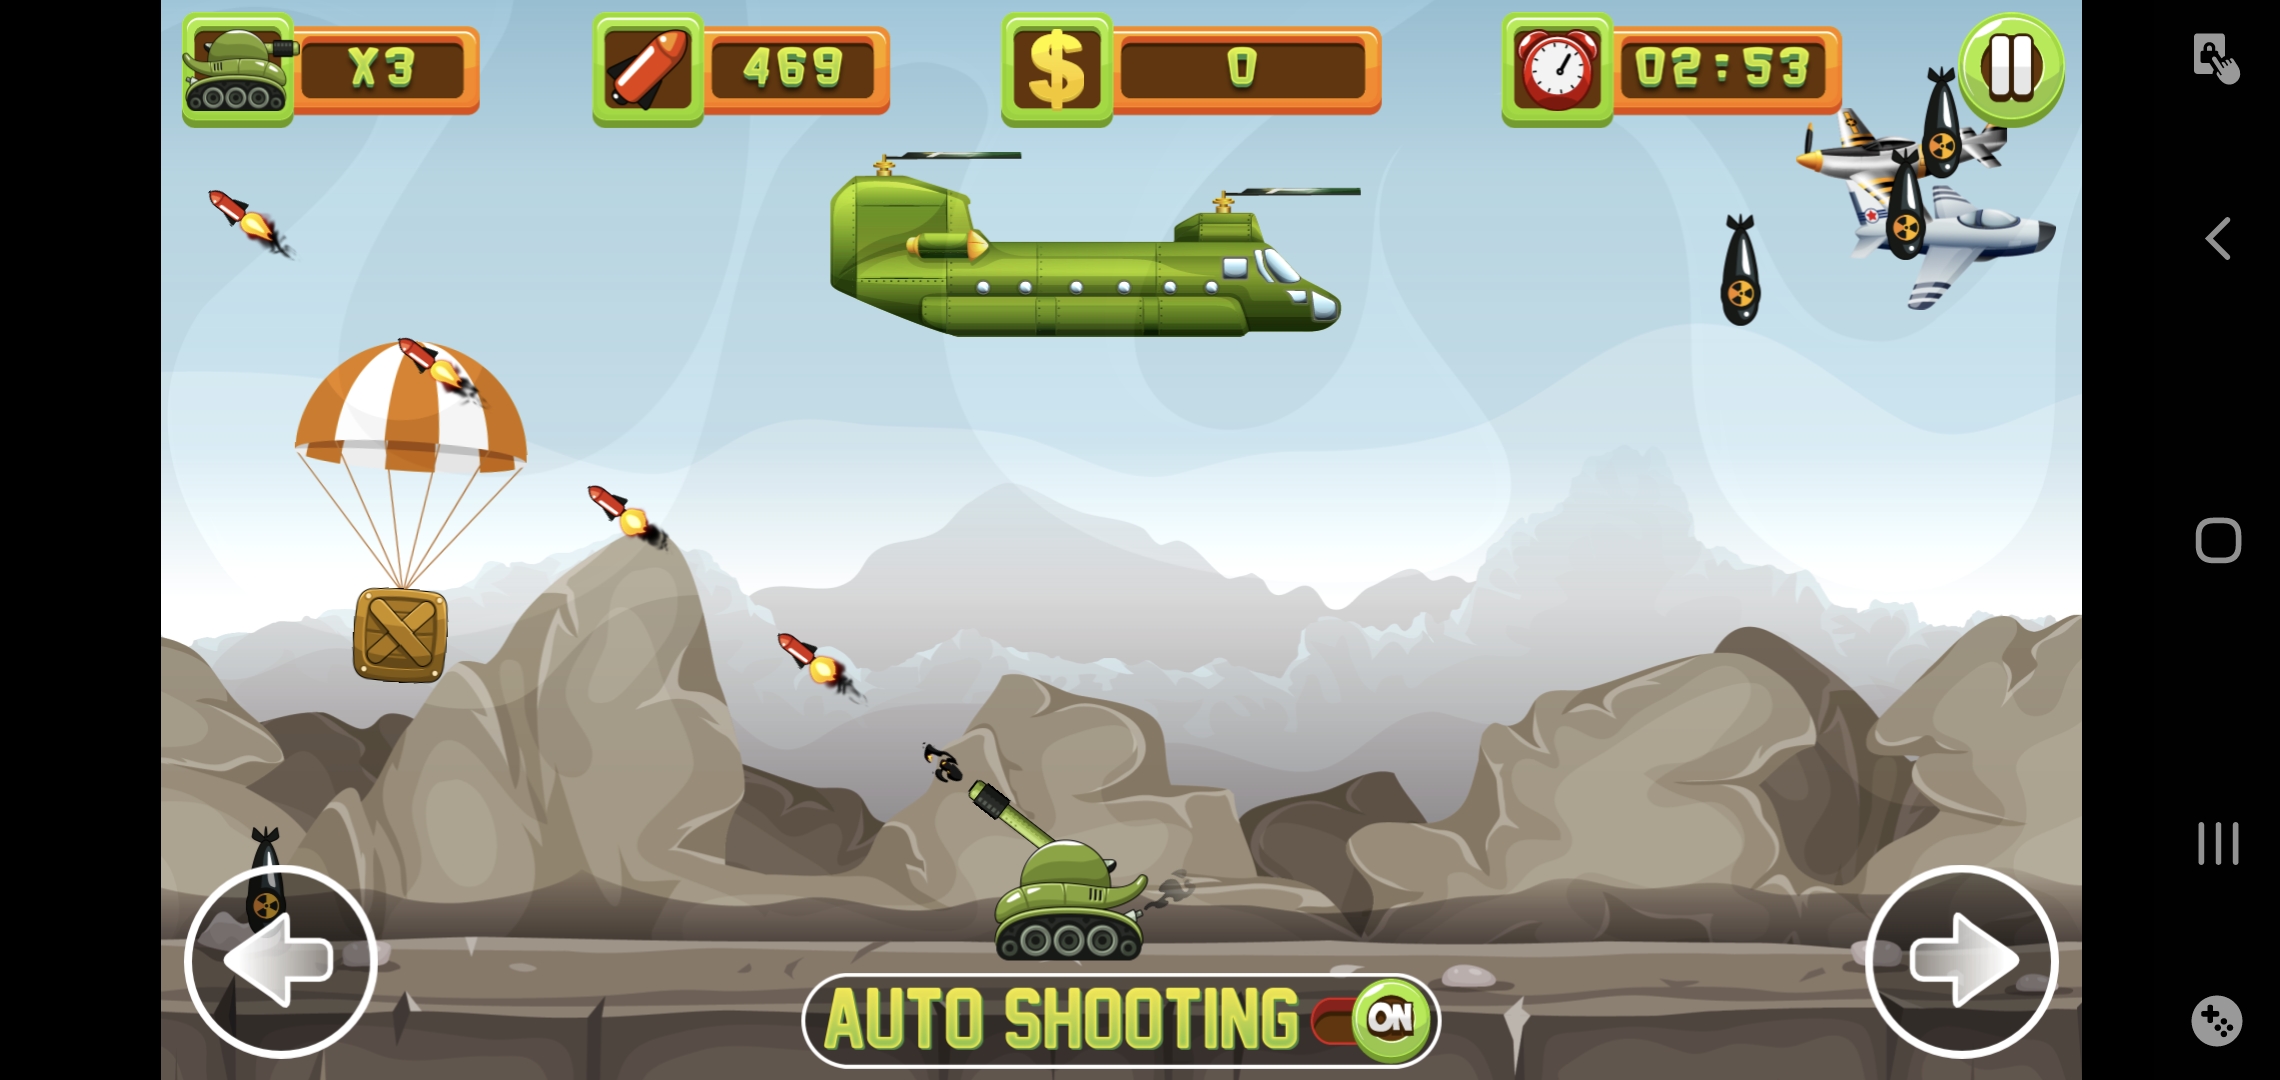 Tank Defender Screenshot